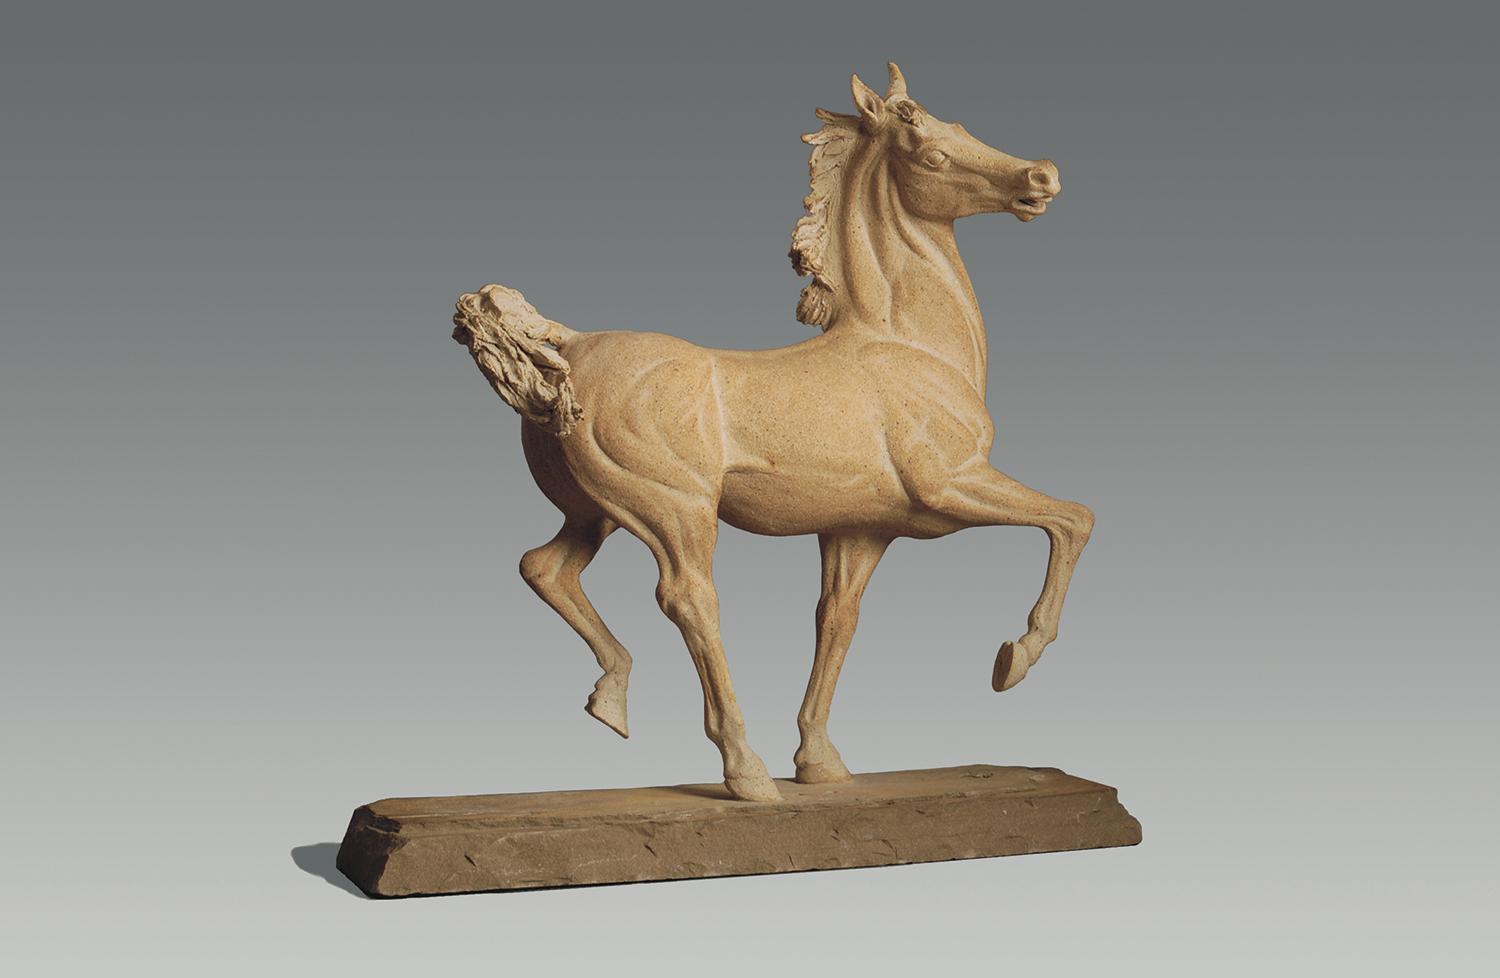  Equus &nbsp; ©  58.5 cm high x 56 cm wide  Unique 